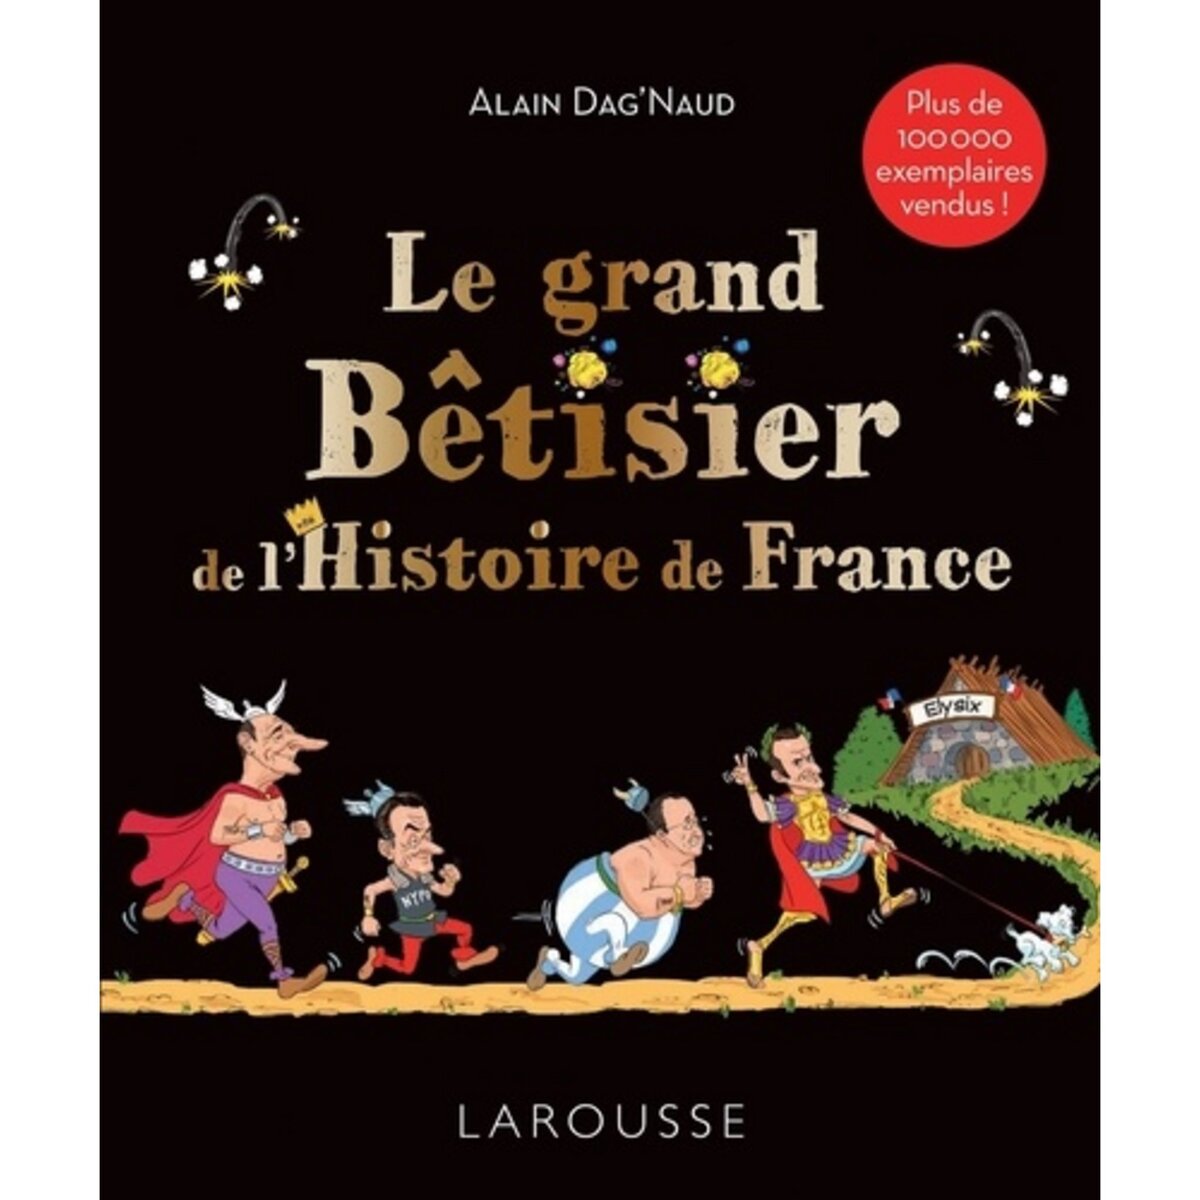  LE GRAND BETISIER DE L'HISTOIRE DE FRANCE, Dag'Naud Alain